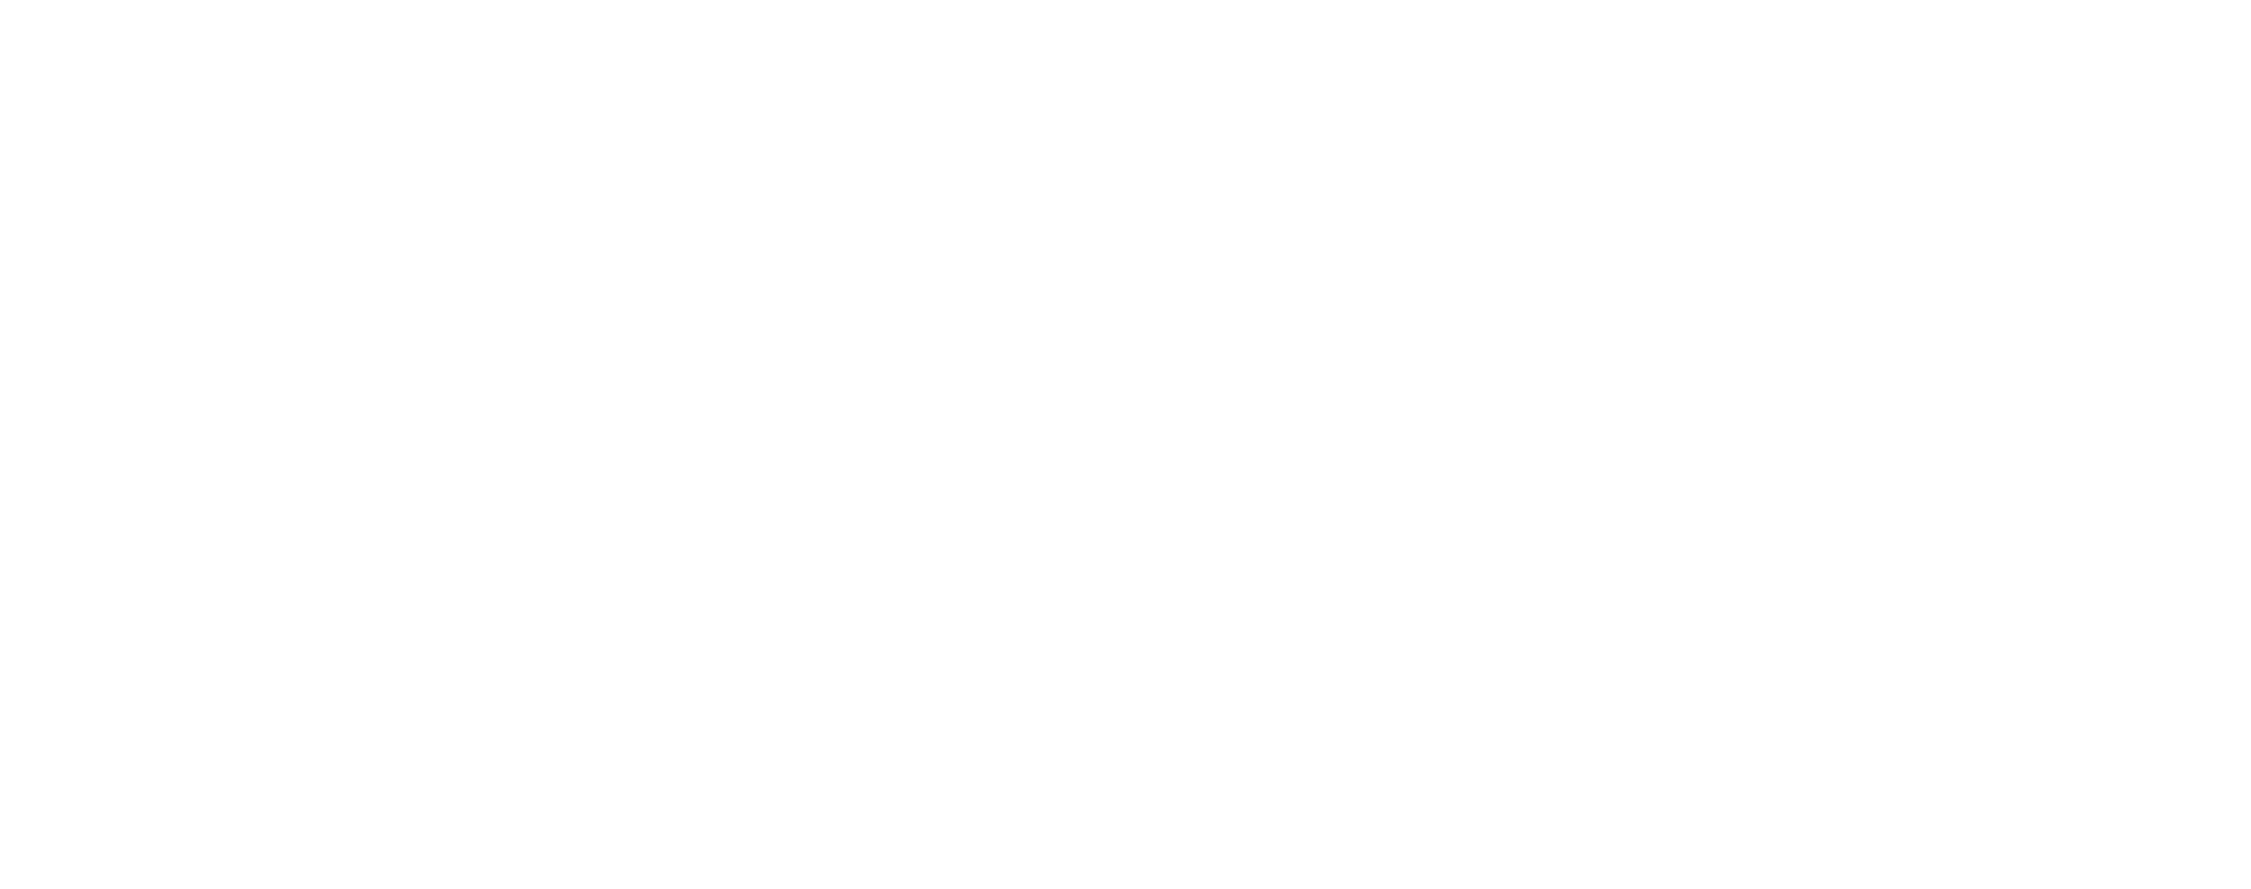 The Beatles: Get Back logo